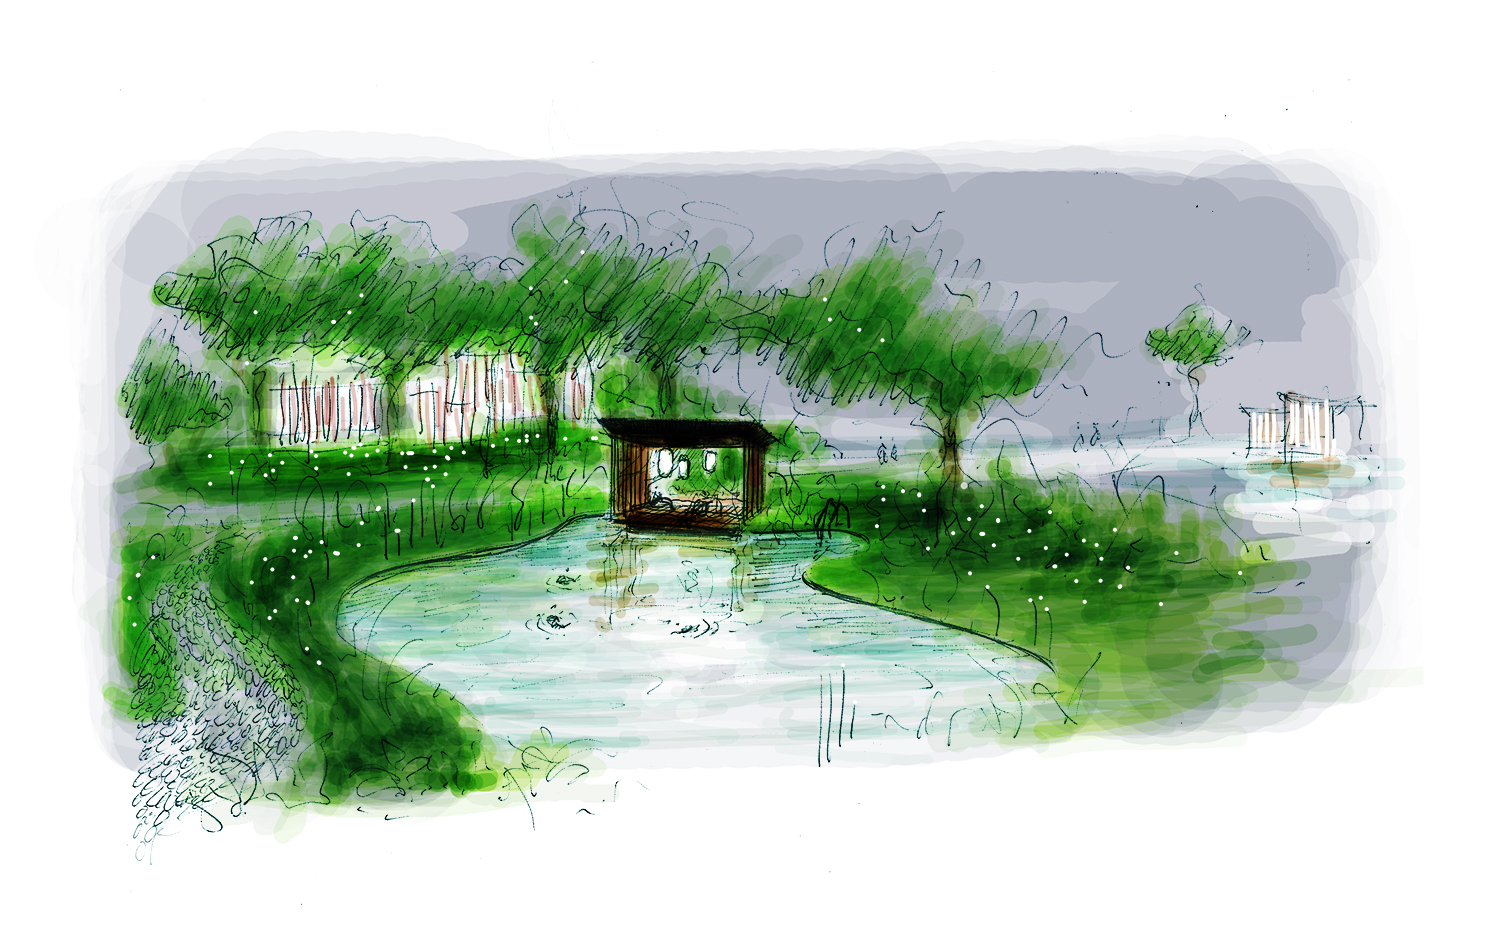 BOIFFILS-Dian Shan Lake-Sketch-Landscape-03.jpg